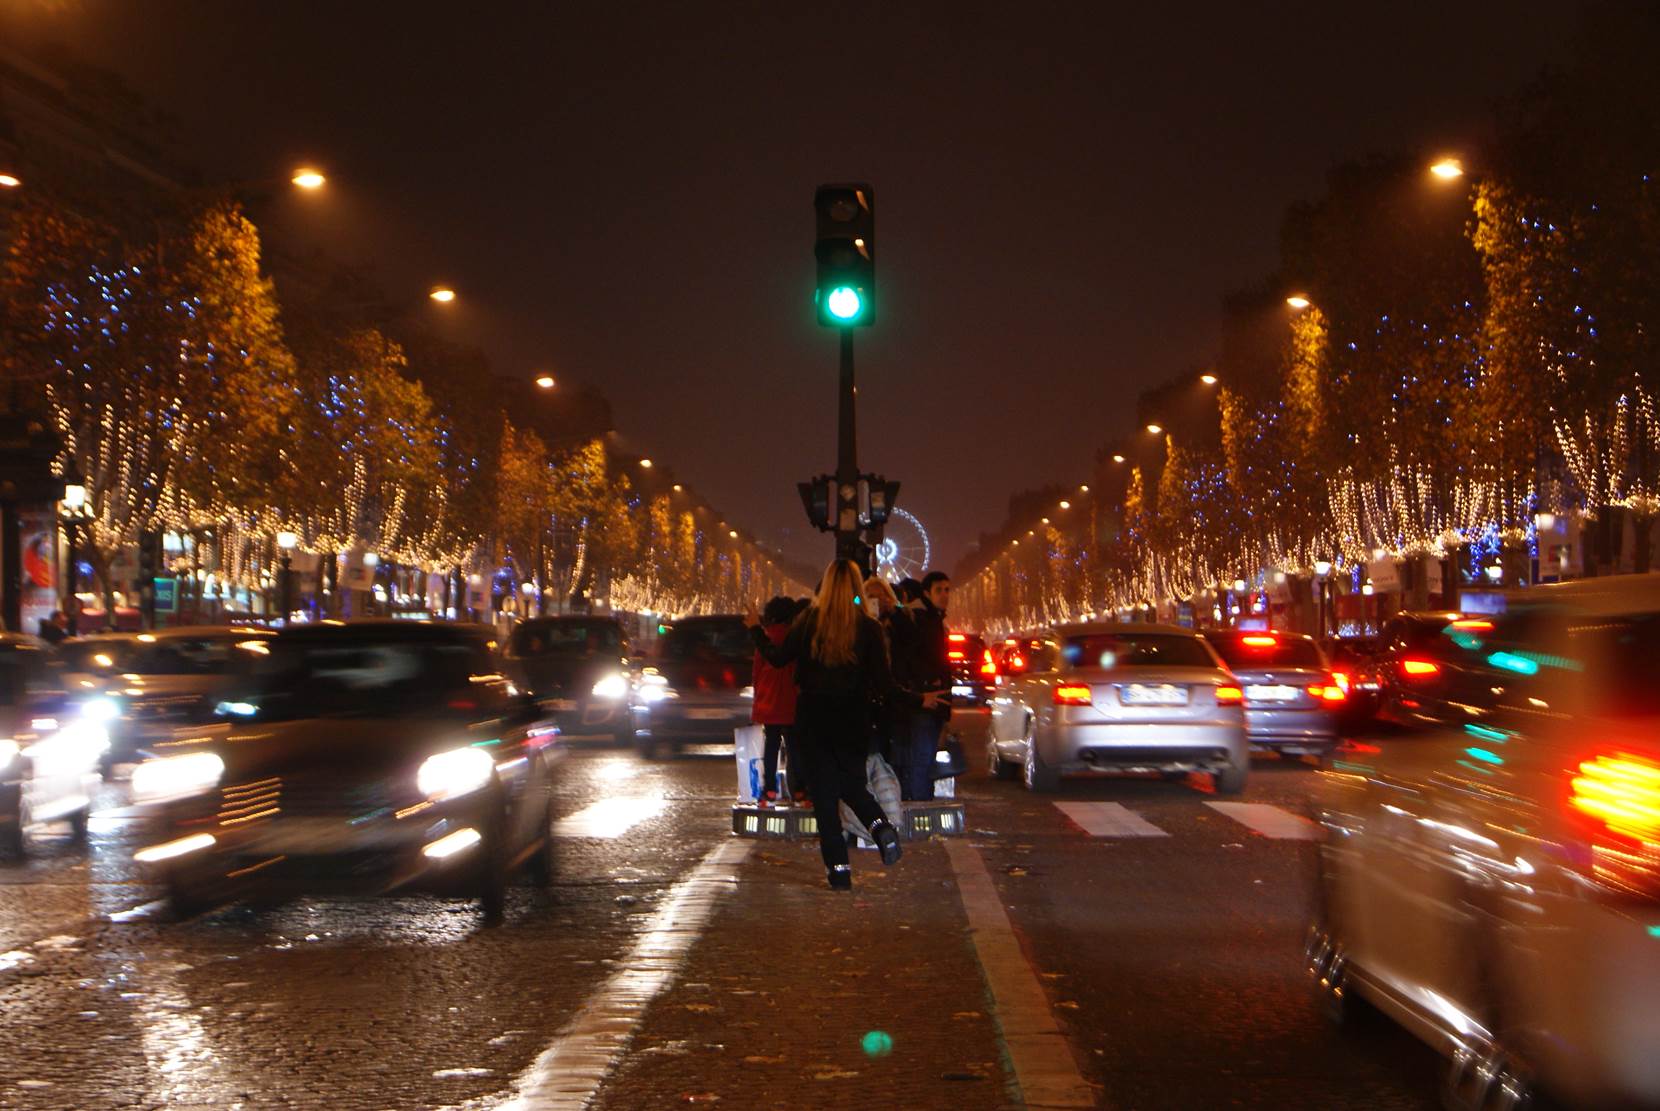 Turistas intentando sacar fotos en pleno tráfico de Campos Elíseos. París, que ver y que hacer en cuatro días